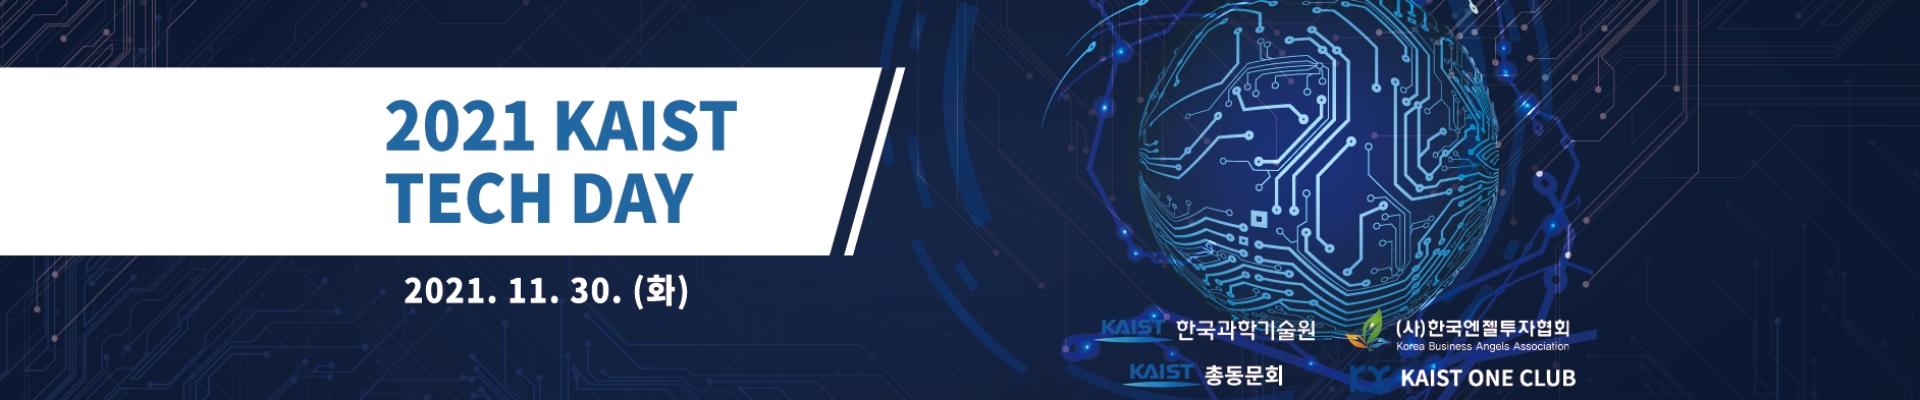 (부대행사) 2021 KAIST TECHDAY  - 기업데모부스 & 온라인 미팅